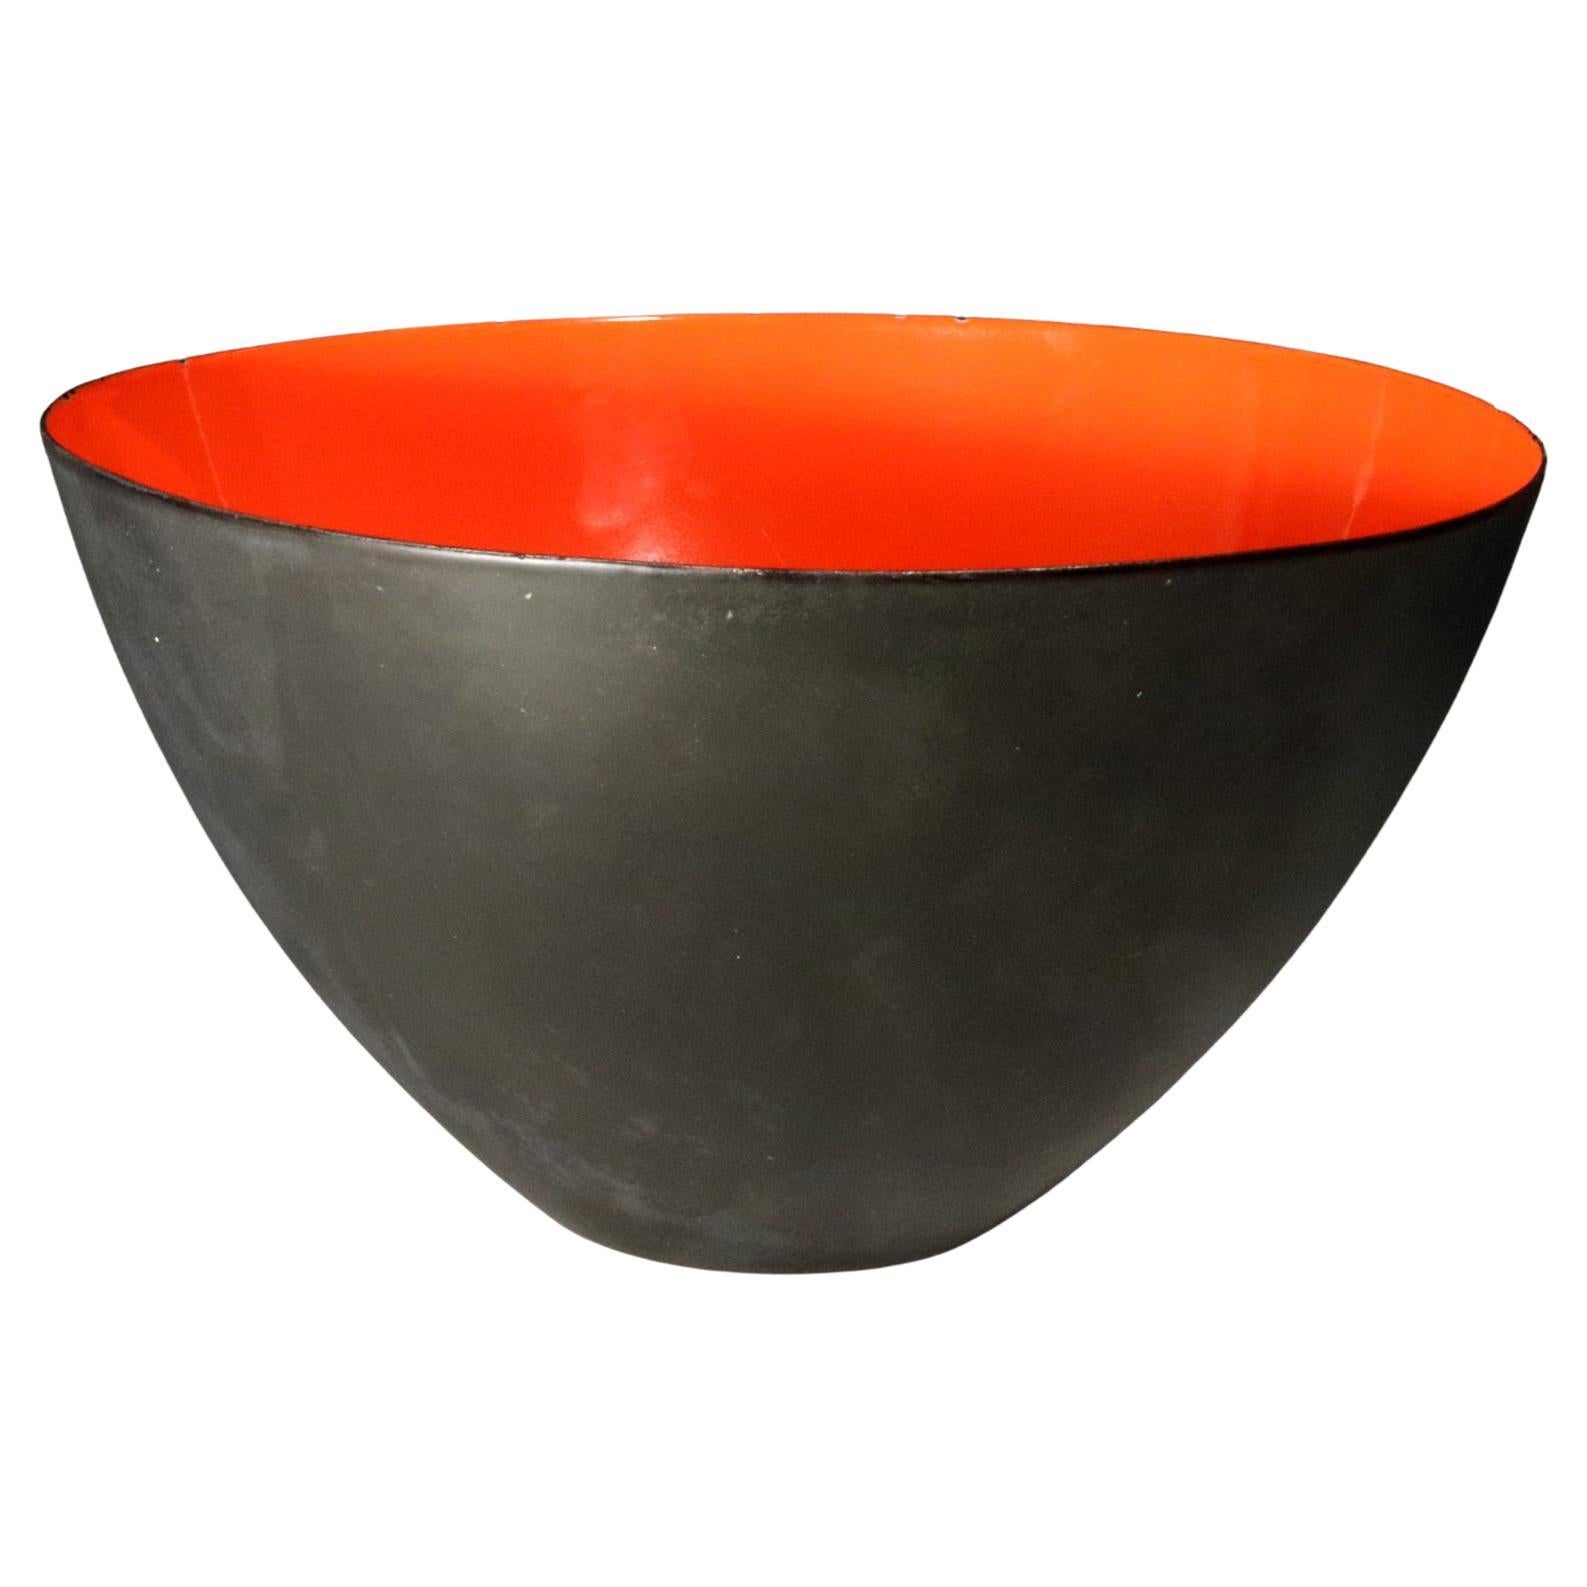 Modernist Kranit Bowl in Black Steel and Red Enamel, by Herbert Krenchel